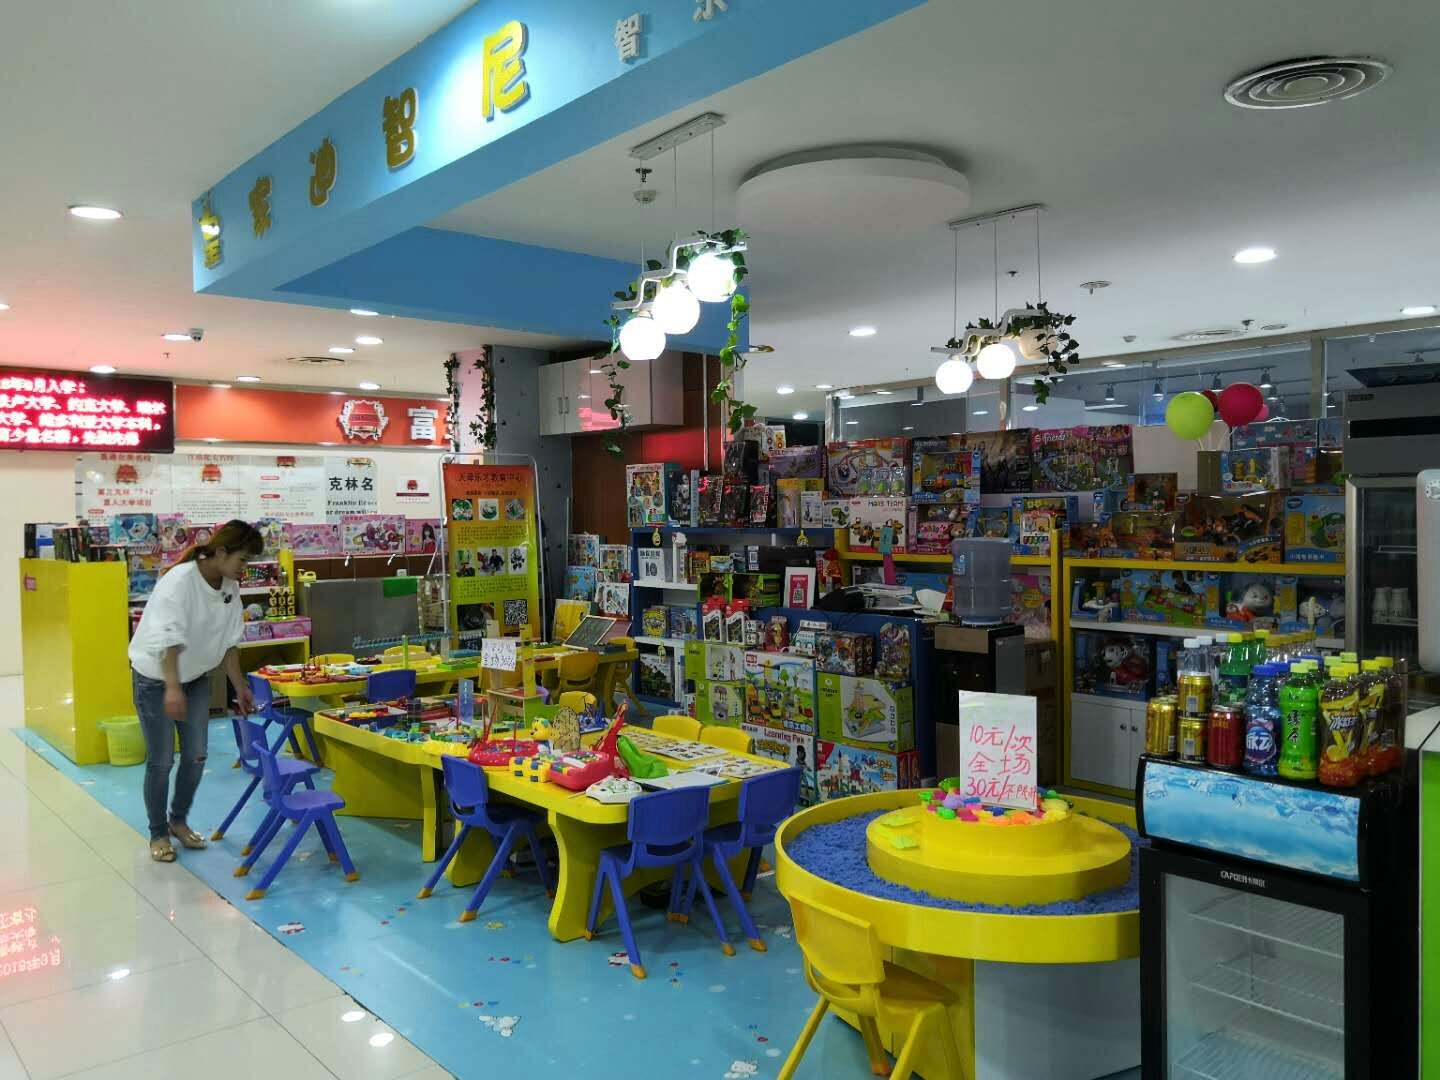 皇家迪智尼玩具加盟店即将在天津开业大吉